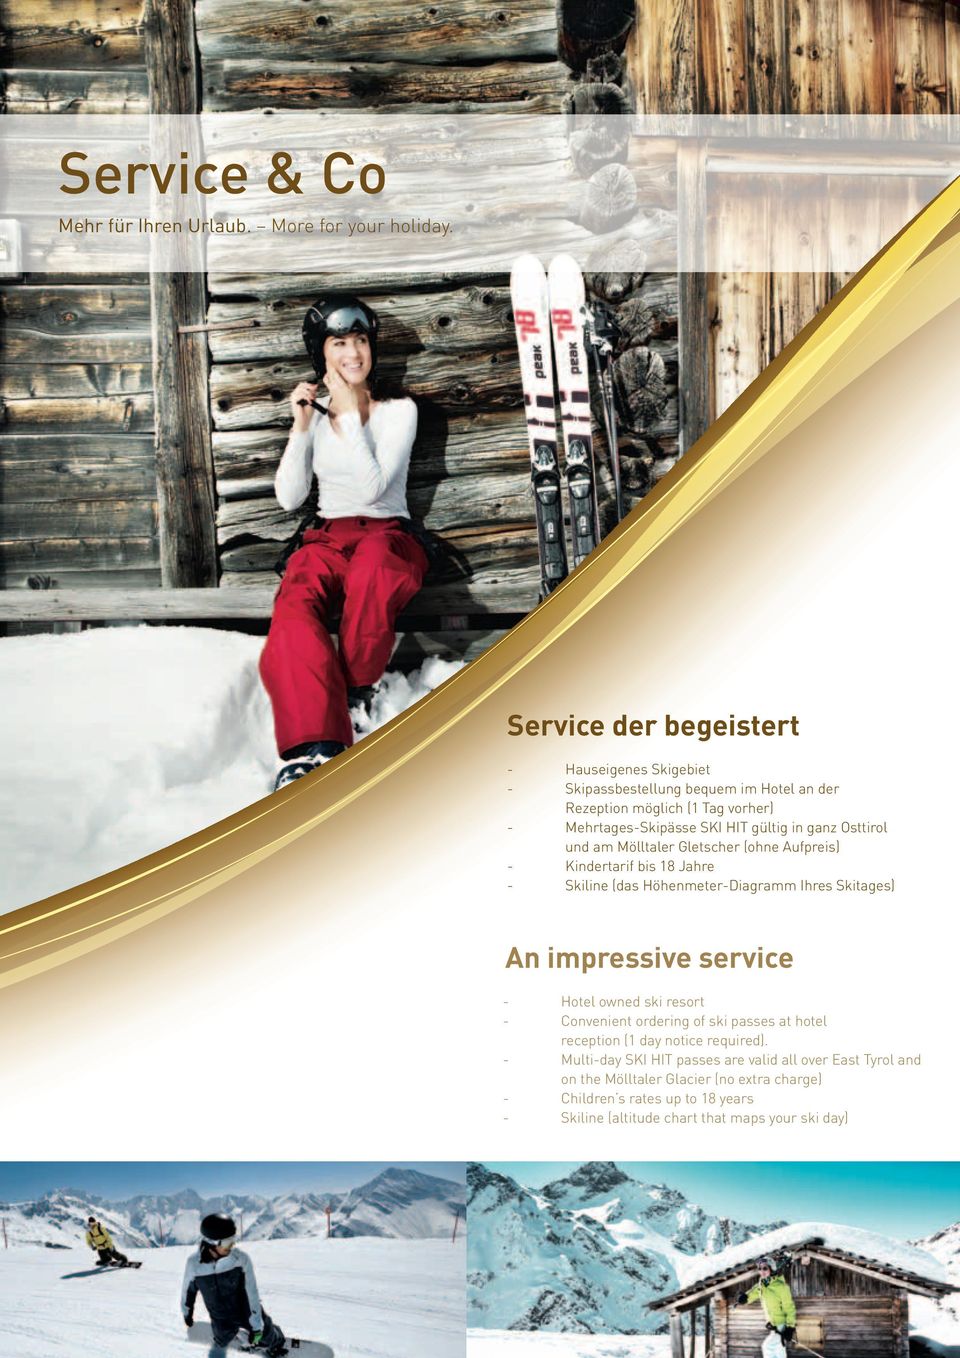 Osttirol und am Mölltaler Gletscher (ohne Aufpreis) - Kindertarif bis 18 Jahre - Skiline (das Höhenmeter-Diagramm Ihres Skitages) An impressive service - Hotel owned